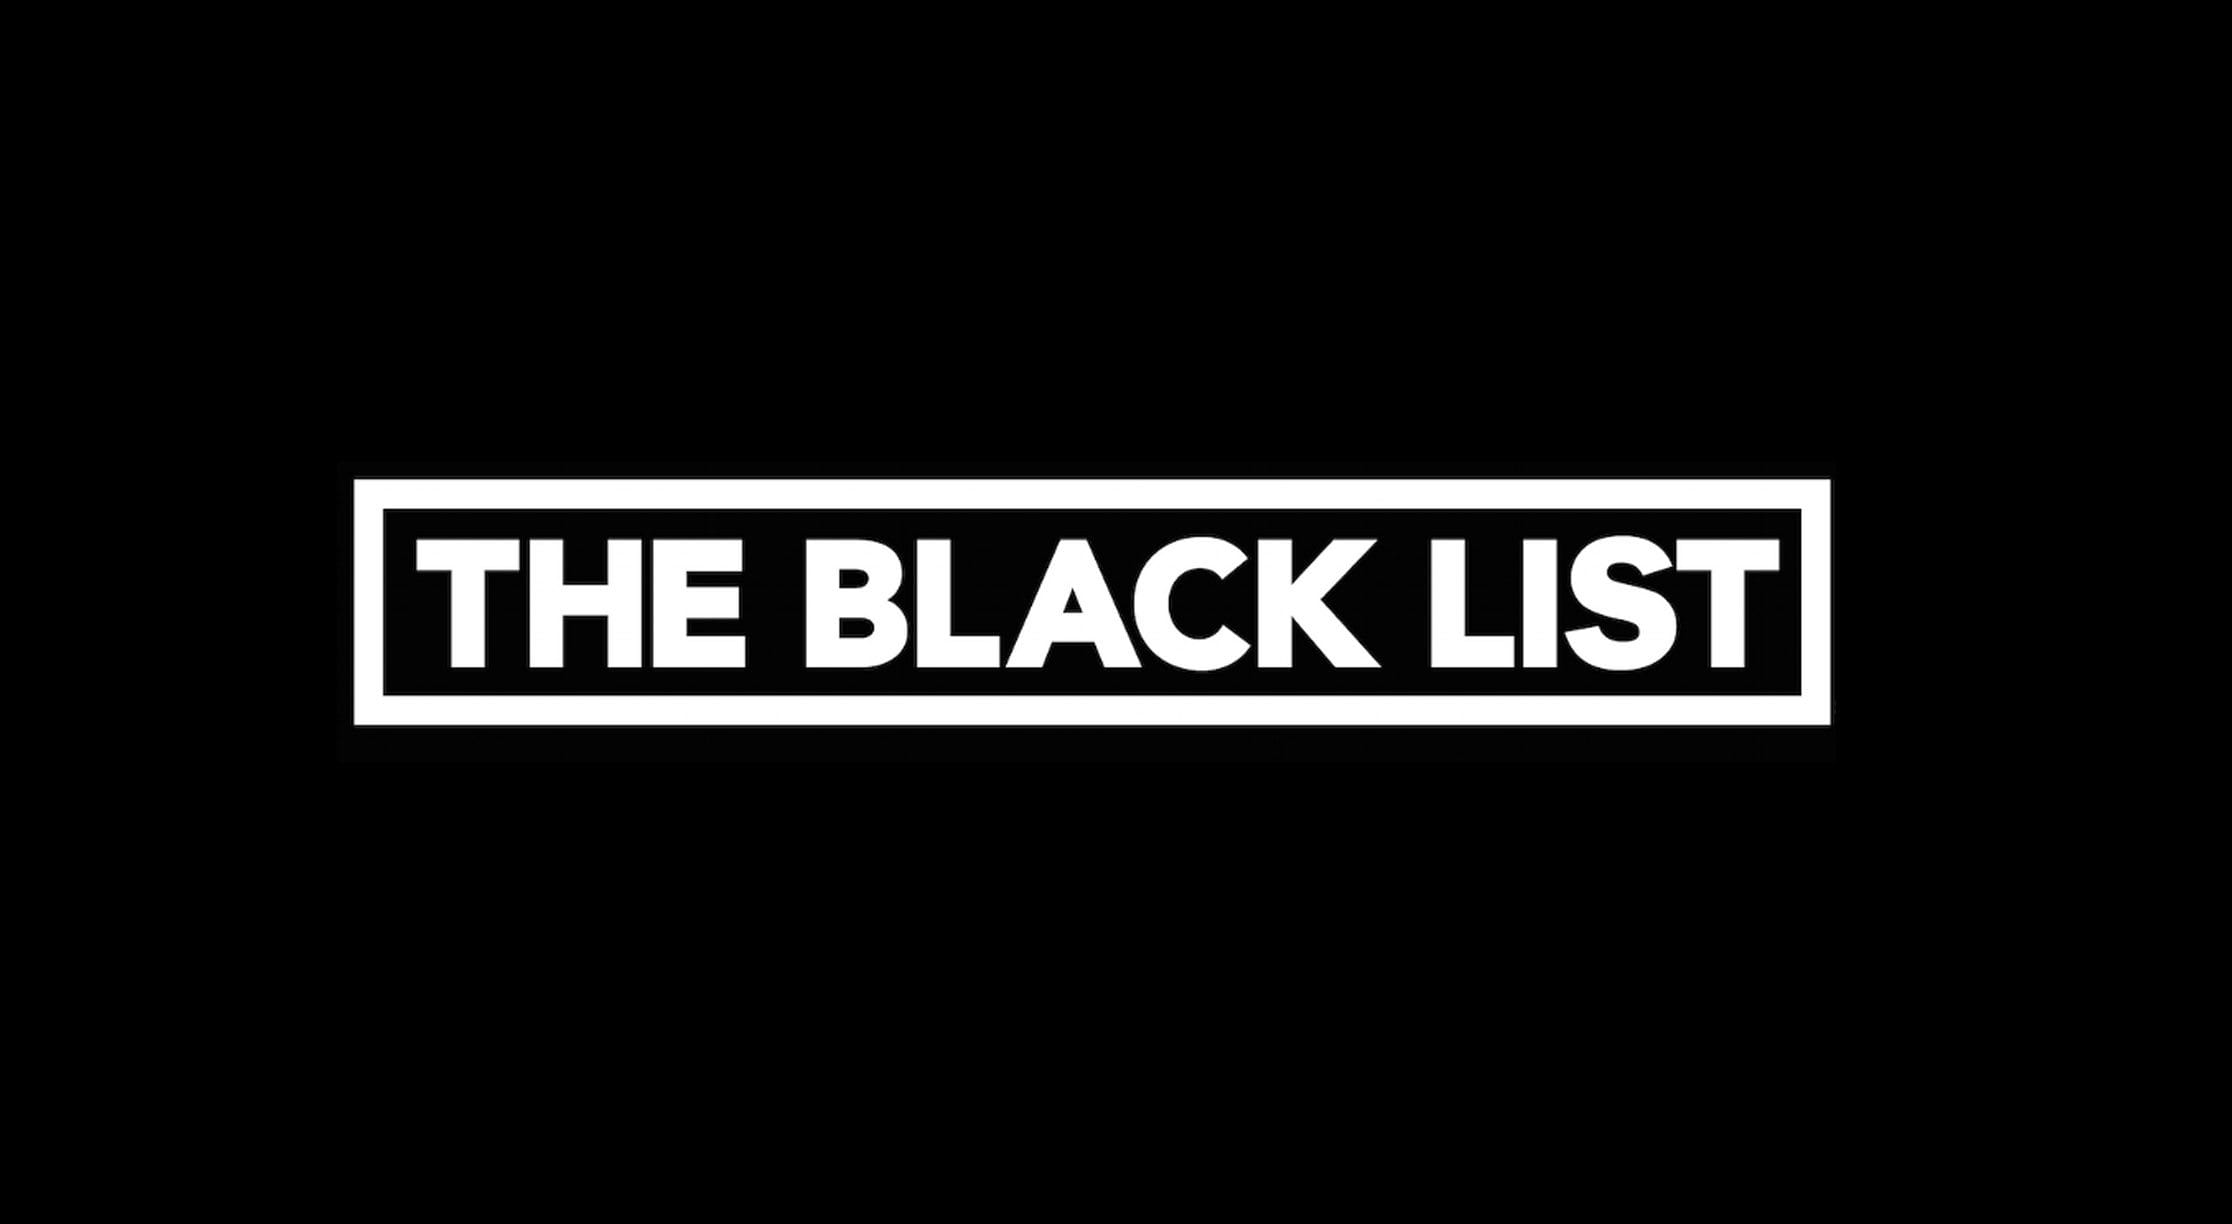 Черный список жен. Черный список. Черный список надпись. Blacklist надпись. Черный список картинки.